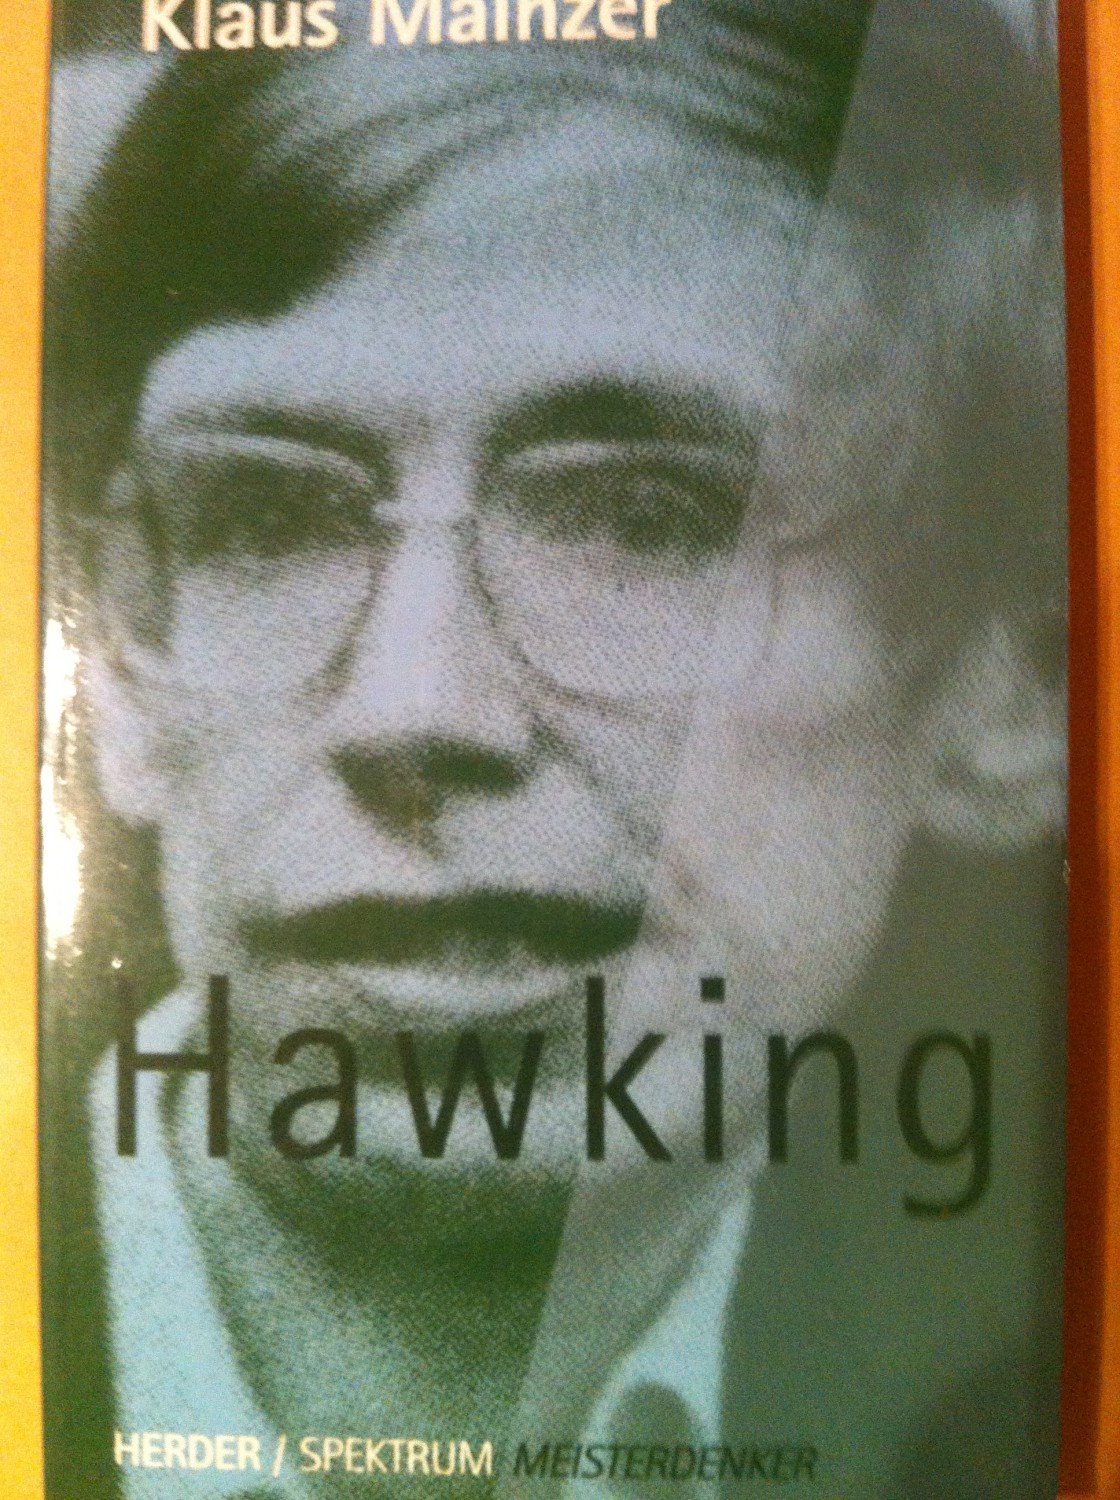 Hawking - Mainzer, Klaus